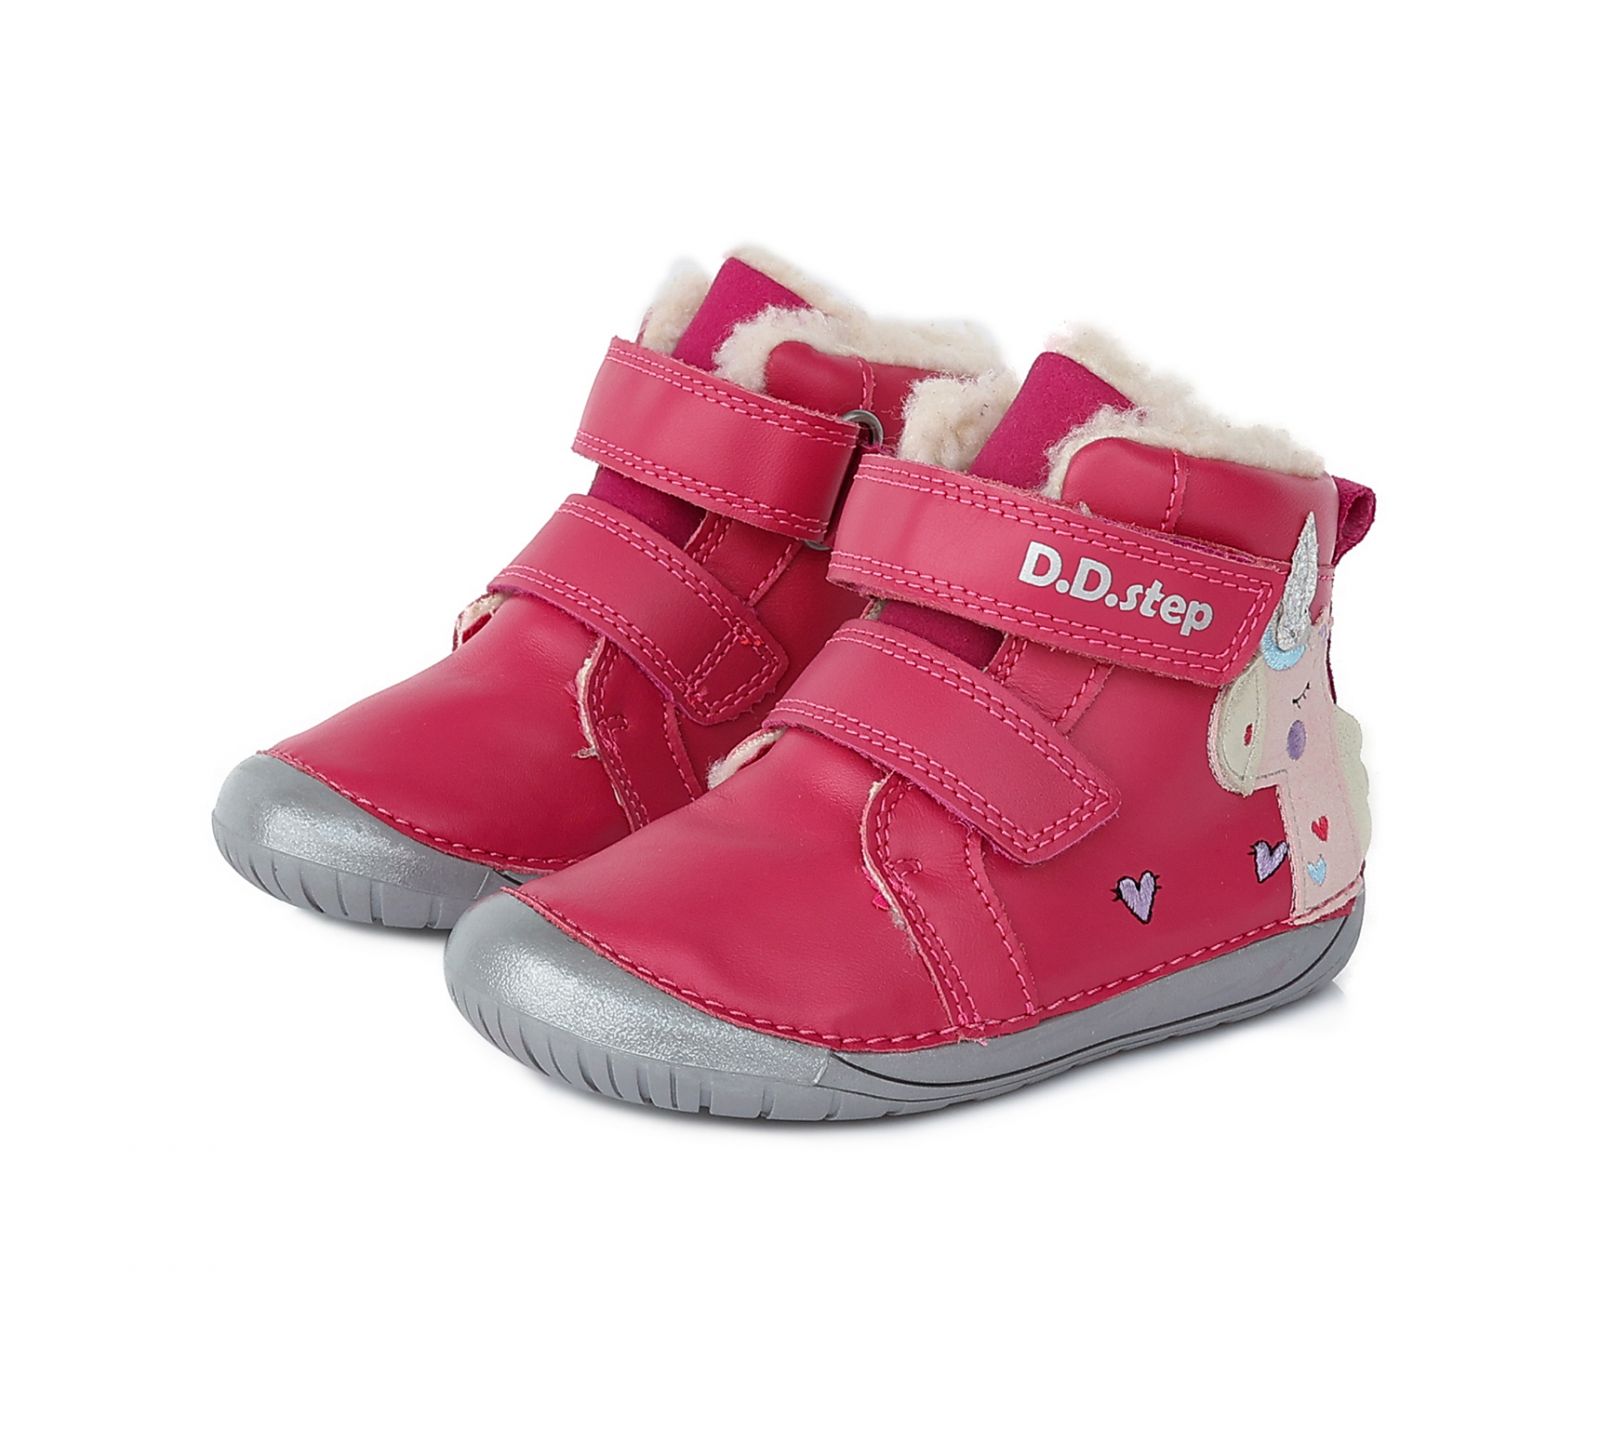 Zimní boty DDstep 070 - růžové - jednorožec